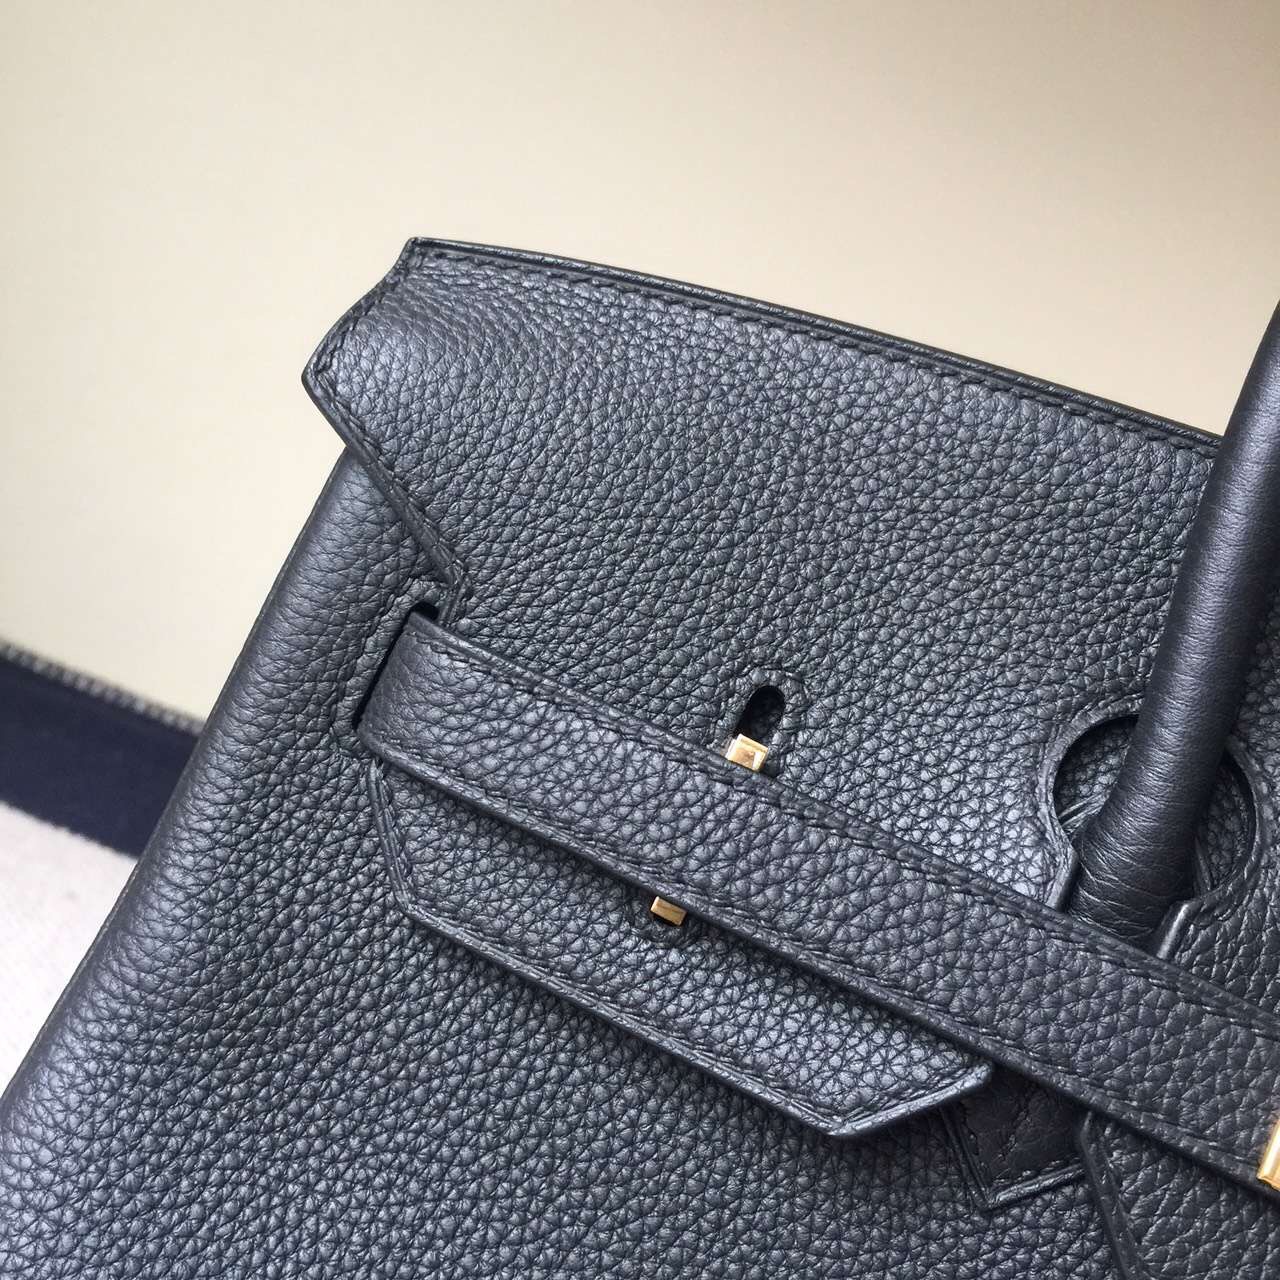 Hermes Classic Bag CK89 Black Togo Leather Birkin Bag 35cm